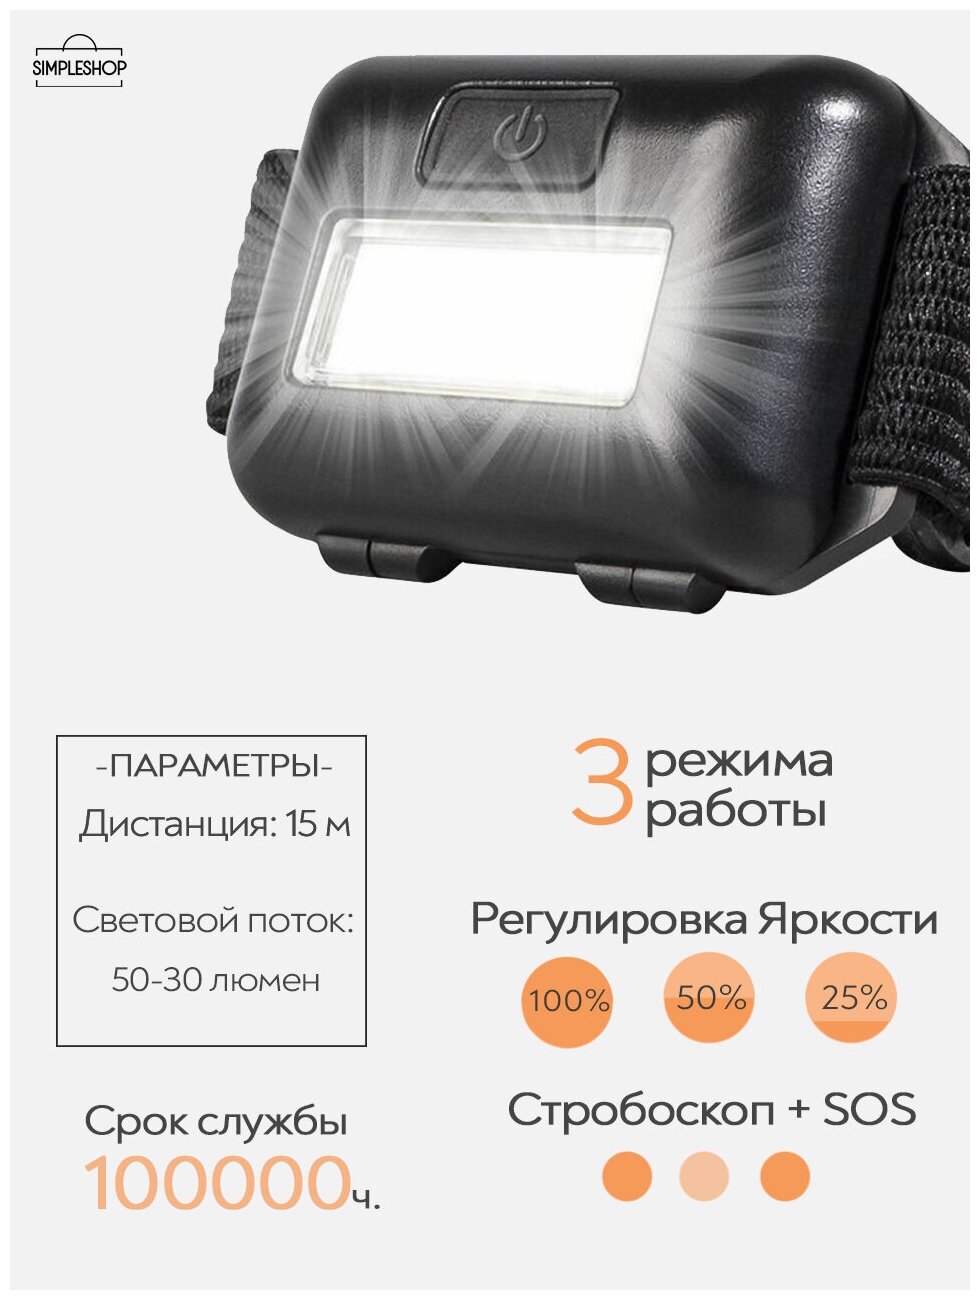 Налобный светодиодный фонарь SimpleShop широкий рабочий свет, 3 режима работы, работает от 3 AAA батареек/ яркий легкий фонарик